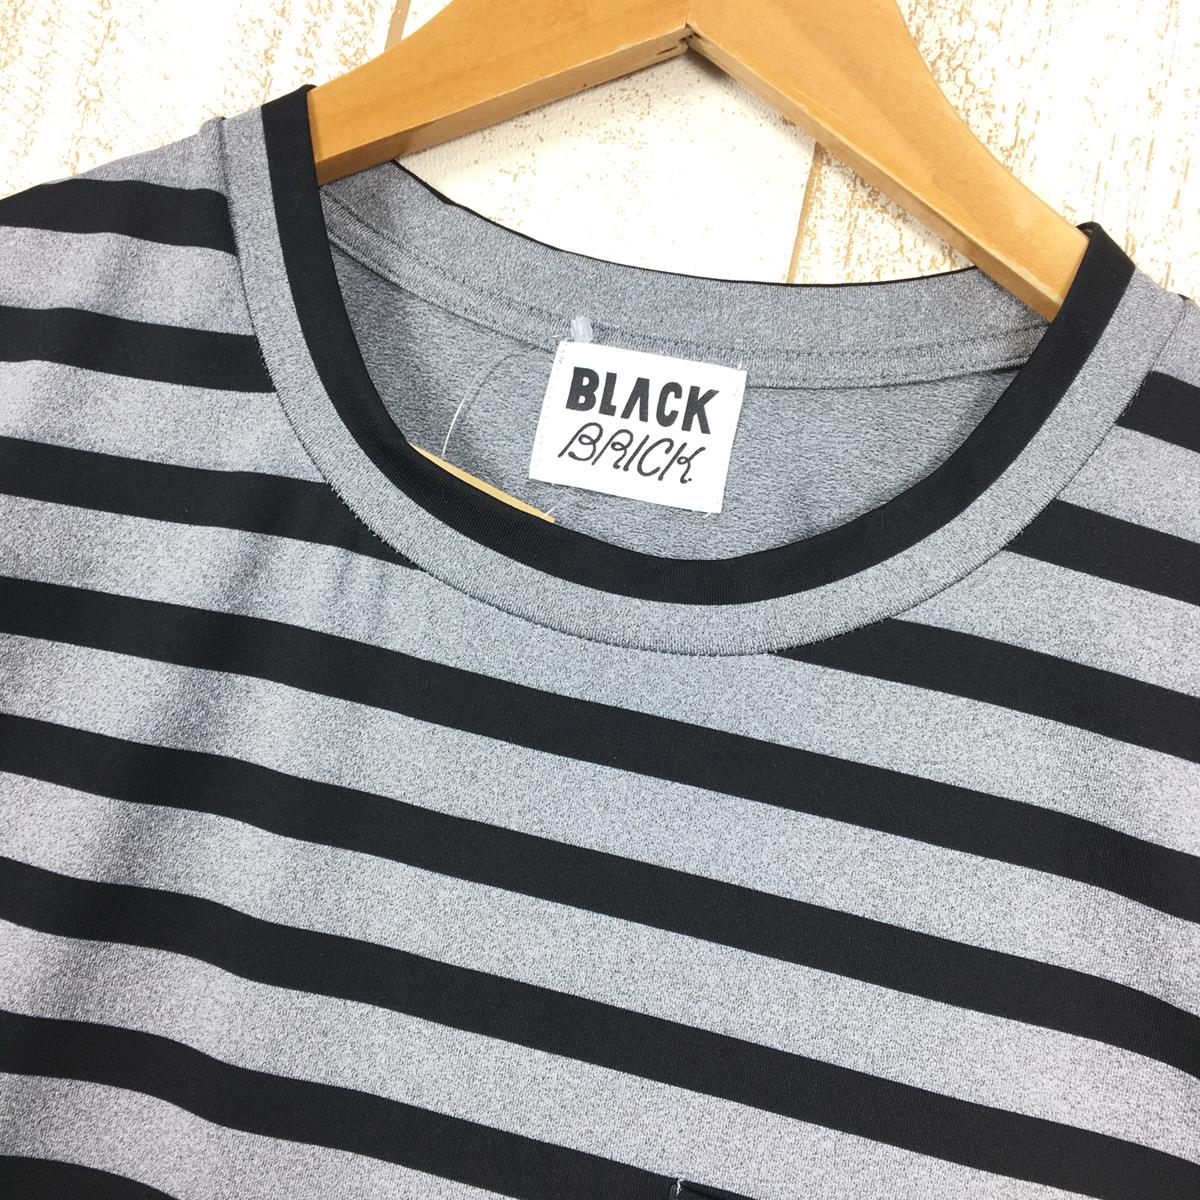 【UNISEX S】 ブラックブリック Black Brick ロングスリーブ ストレッチ ボーダー ポケット Tシャツ Long Sleeve Stretch Border Pocket T-Shirt 生産終了モデル 入手困難 S#BB-T04 Grey / Black グレー系